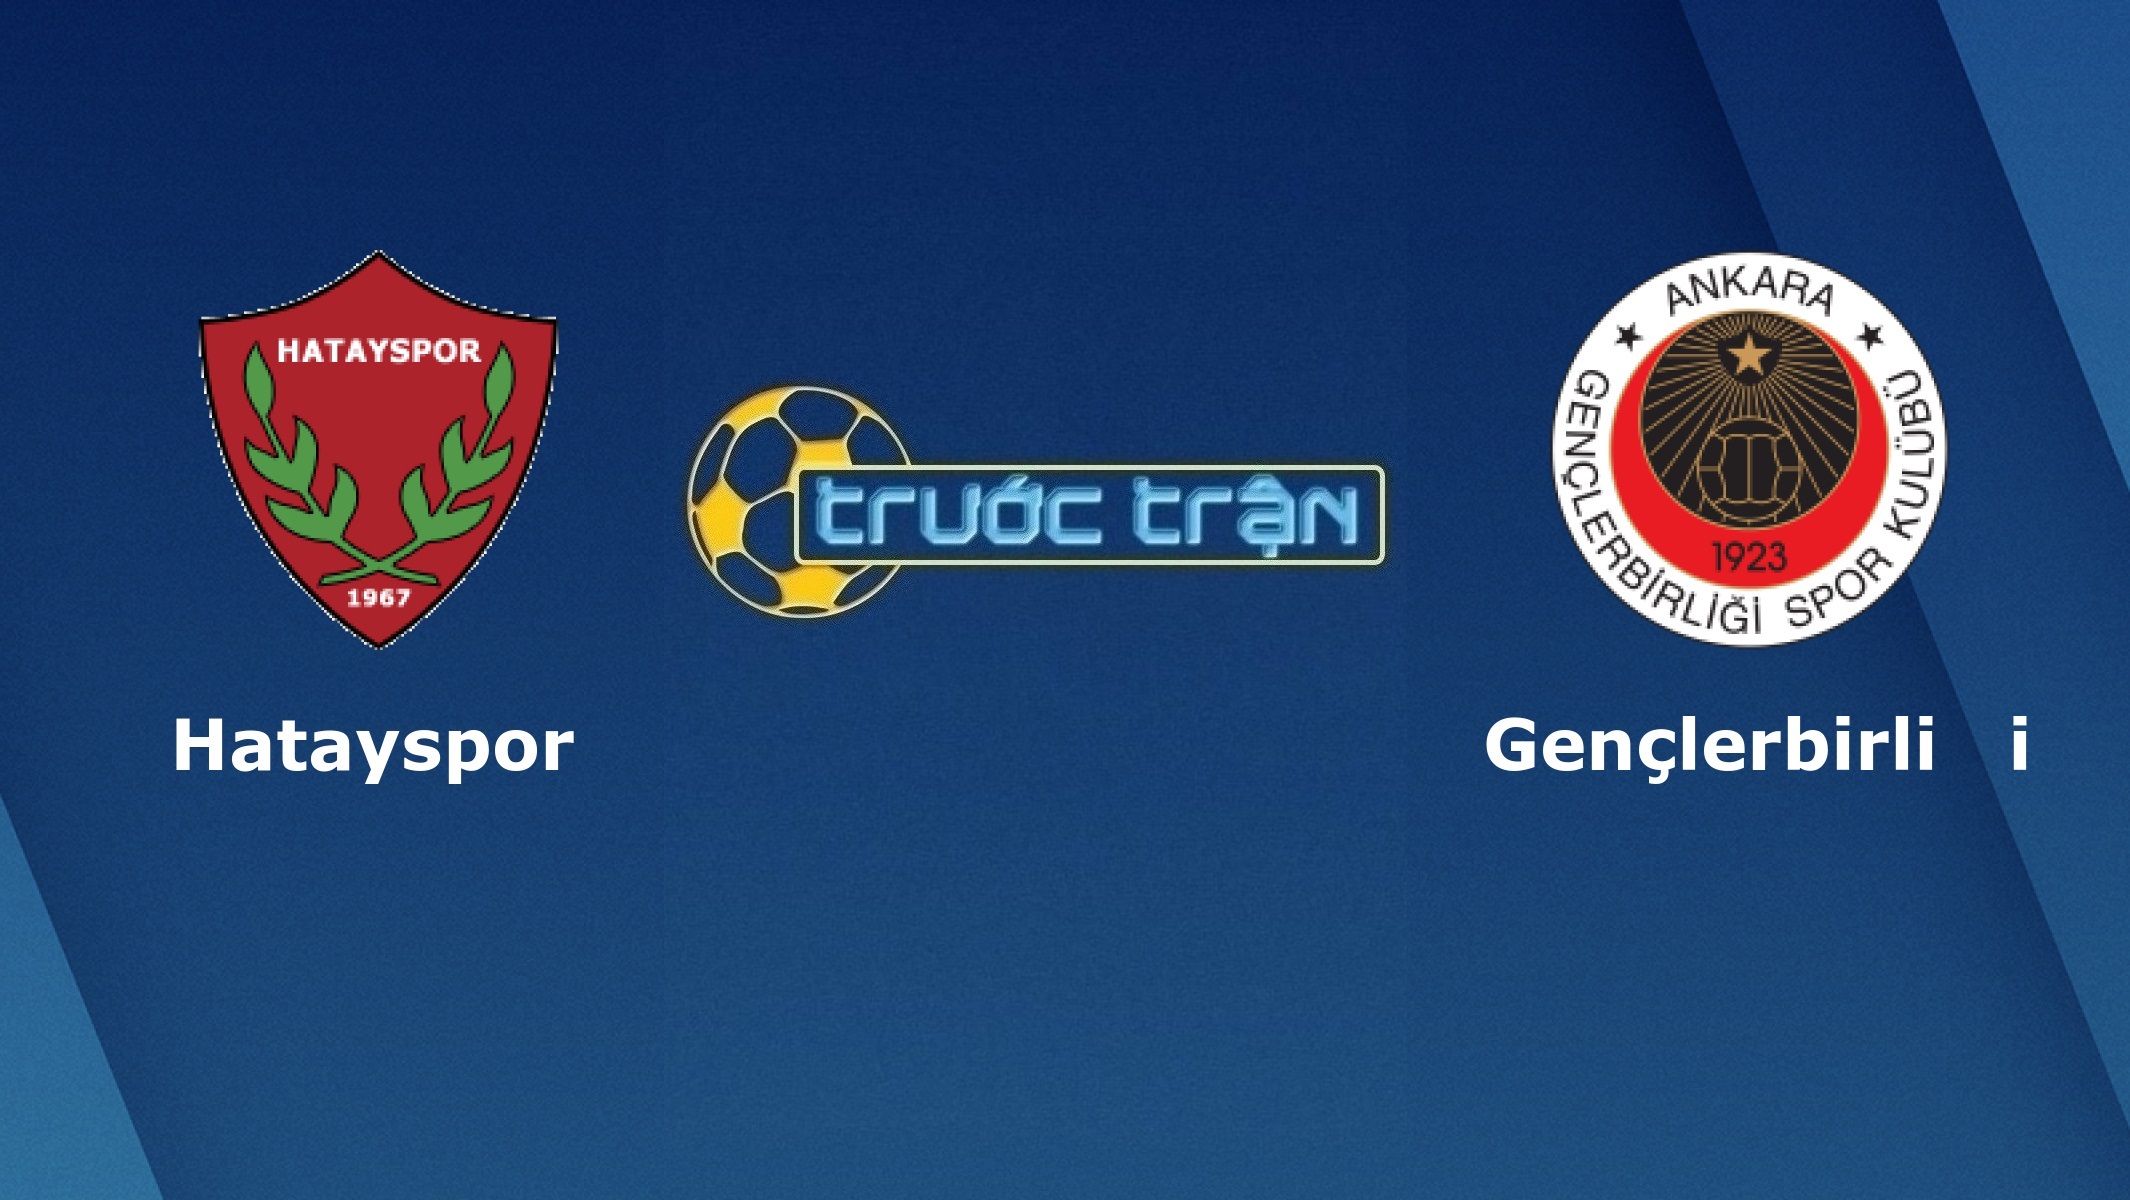 Hatayspor vs Genclerbirligi – Tip kèo bóng đá hôm nay – 00h30 28/04/2021